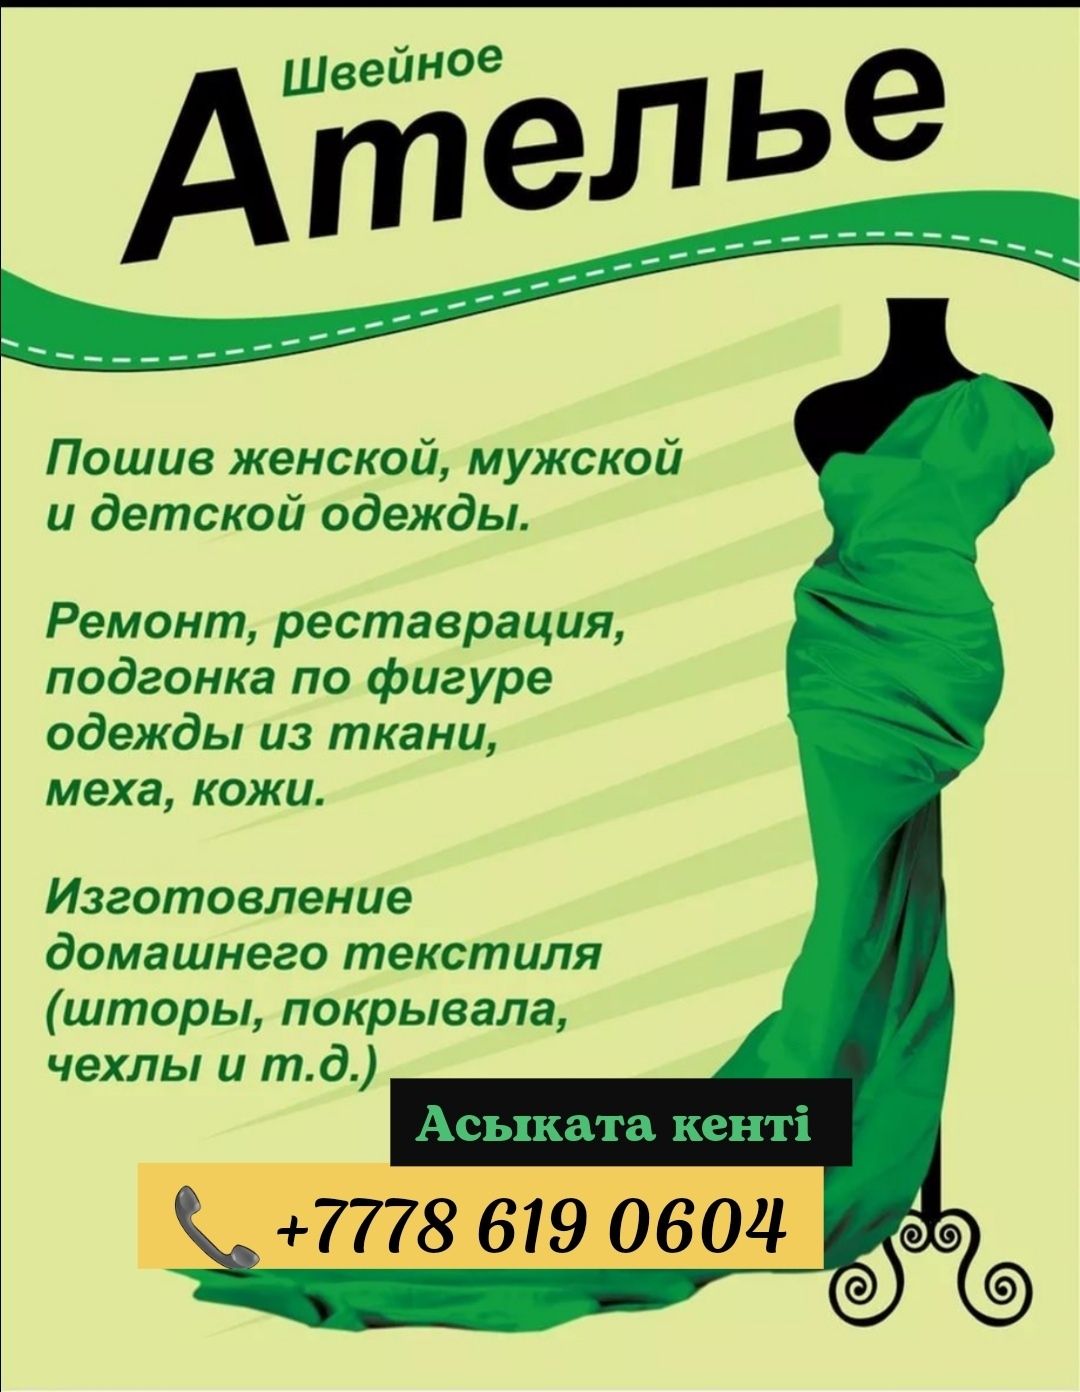 Реклама ателье по пошиву одежды